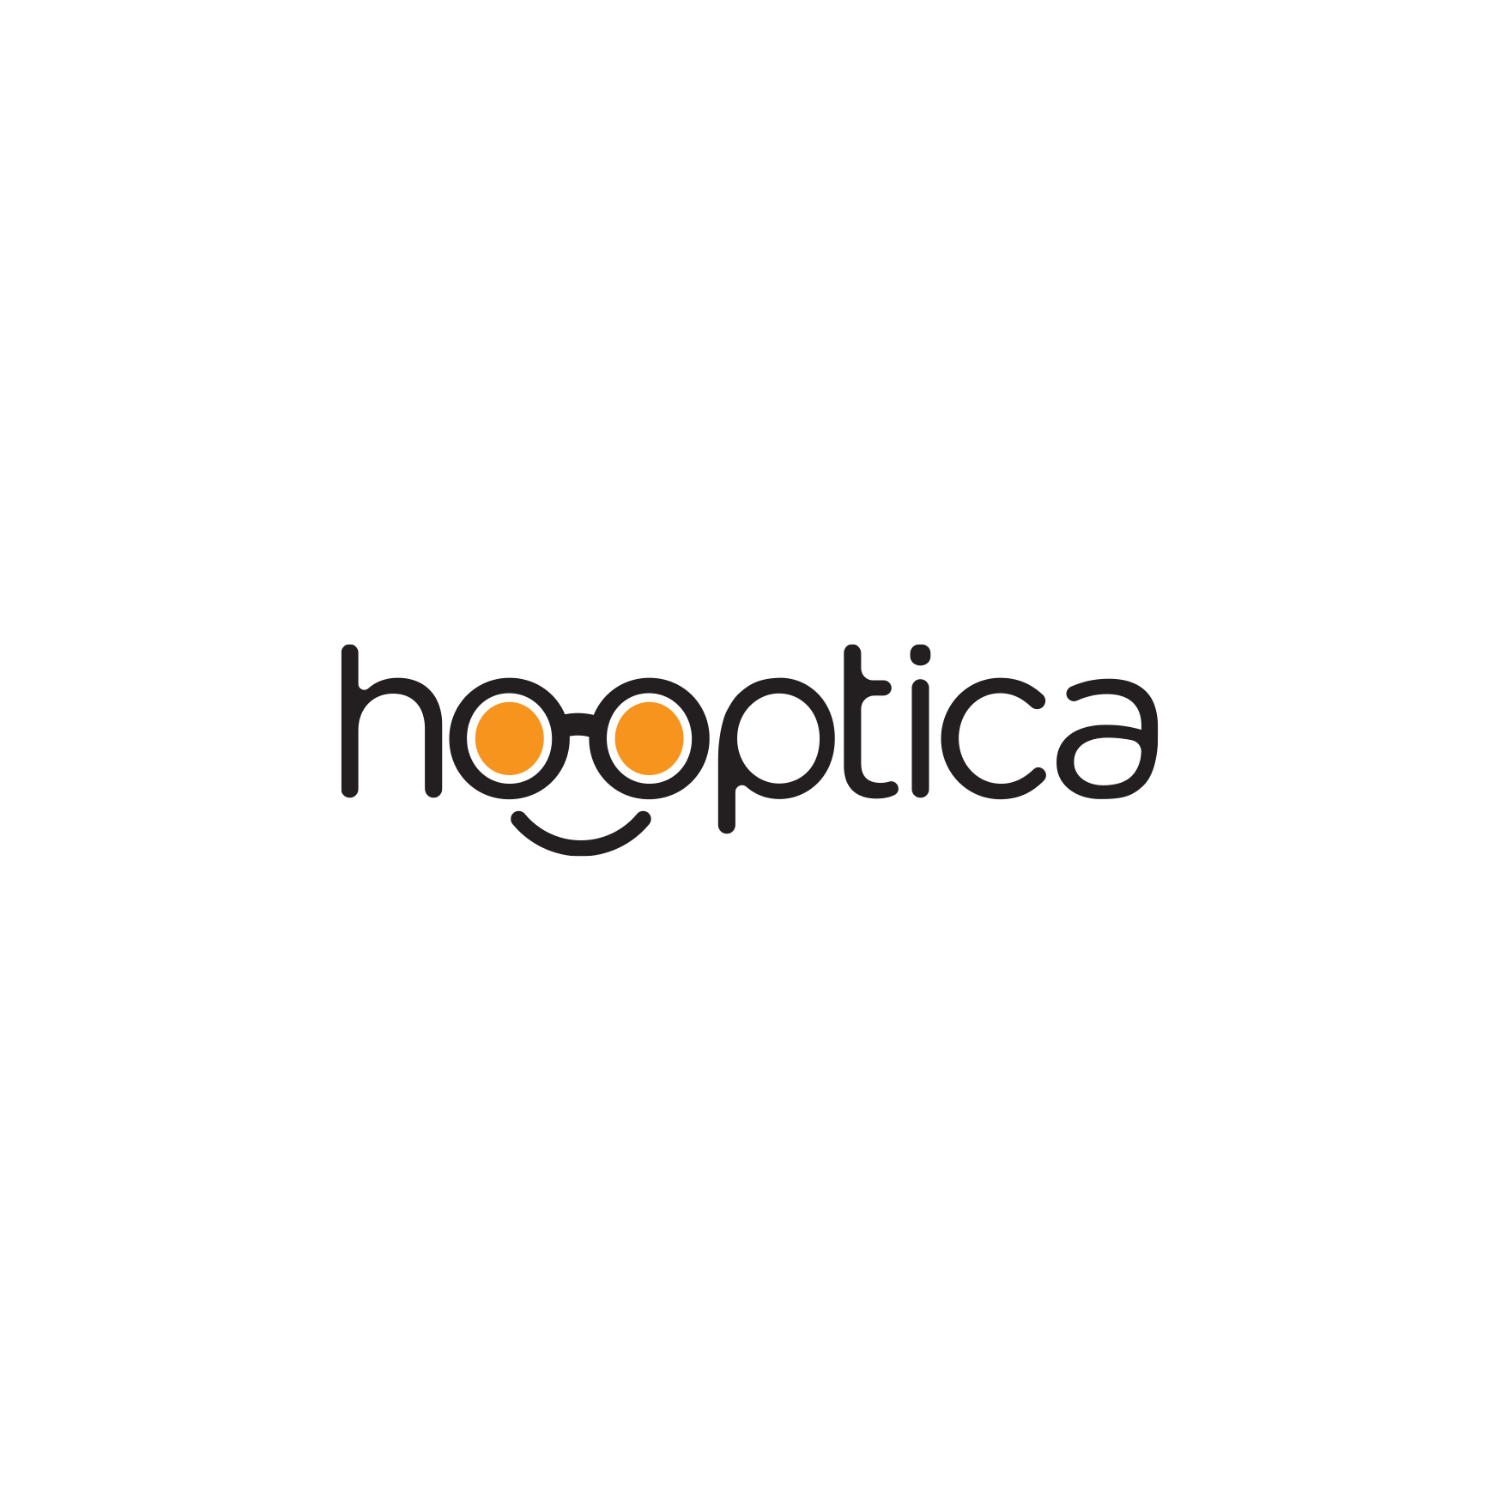 Hooptica